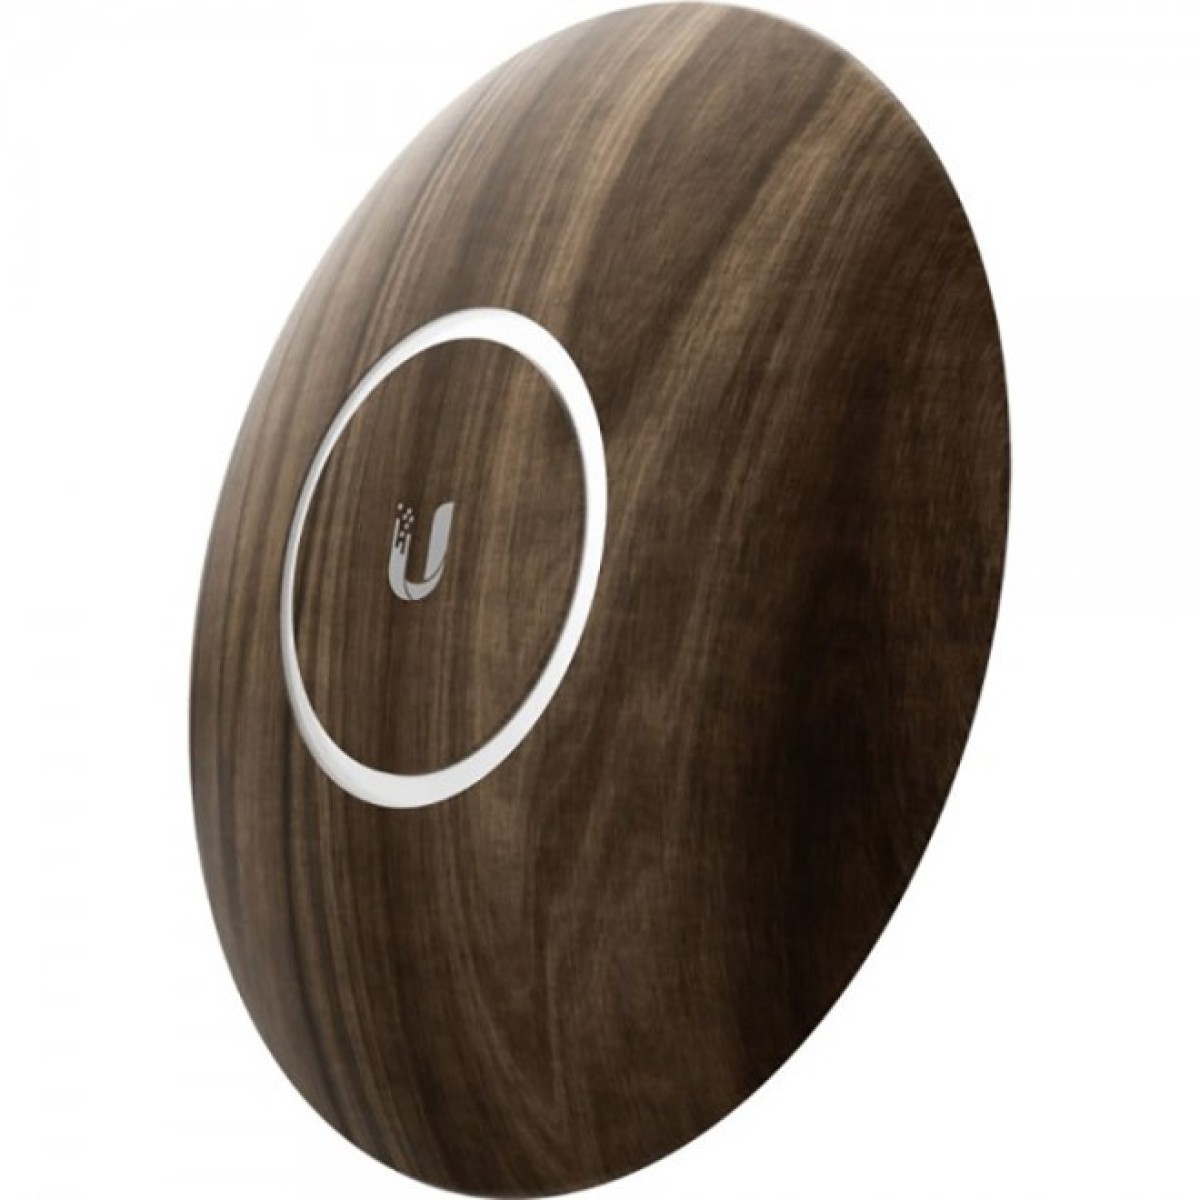 Декоративна накладка на точку доступу Ubiquiti UniFi AP nanoHD Wood Design, 3-Pack (nHD-cover-Wood-3) 98_98.jpg - фото 5